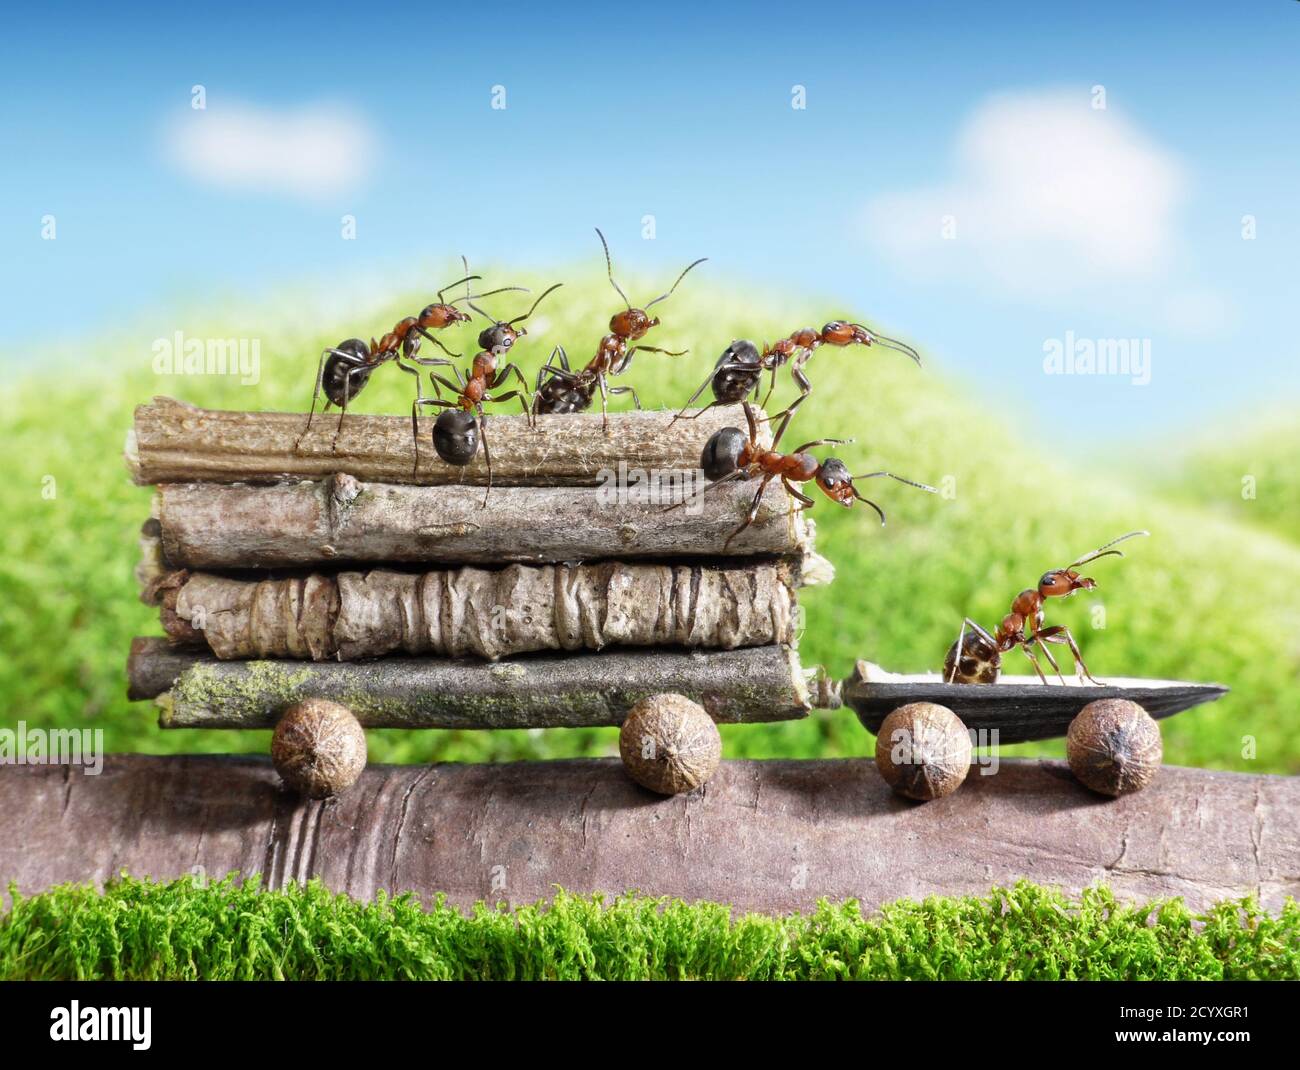 Tutto il buon lavoro è fatto il modo in cui le formiche fanno le cose: A poco a poco. Foto Stock